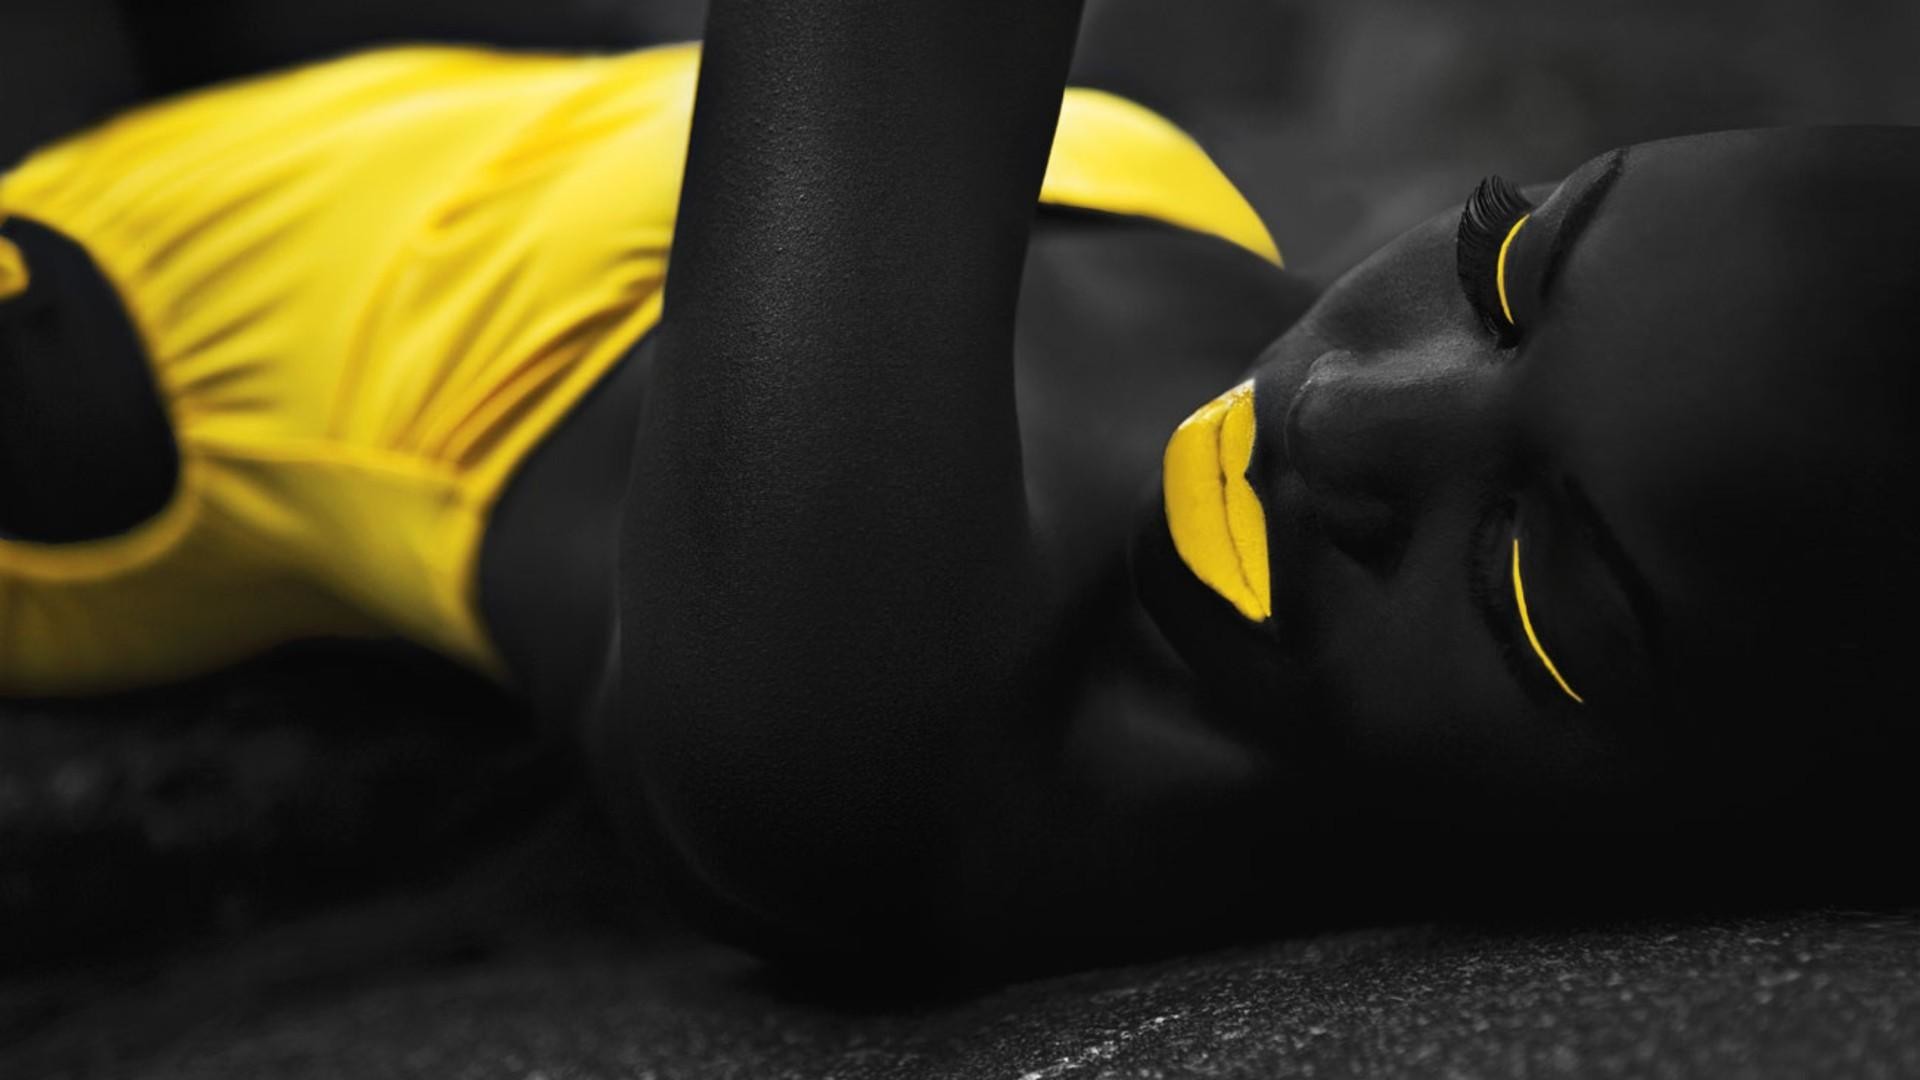 papier peint noir et jaune,jaune,tenue de sport,chaussure,équipement de protection individuelle,chaussure